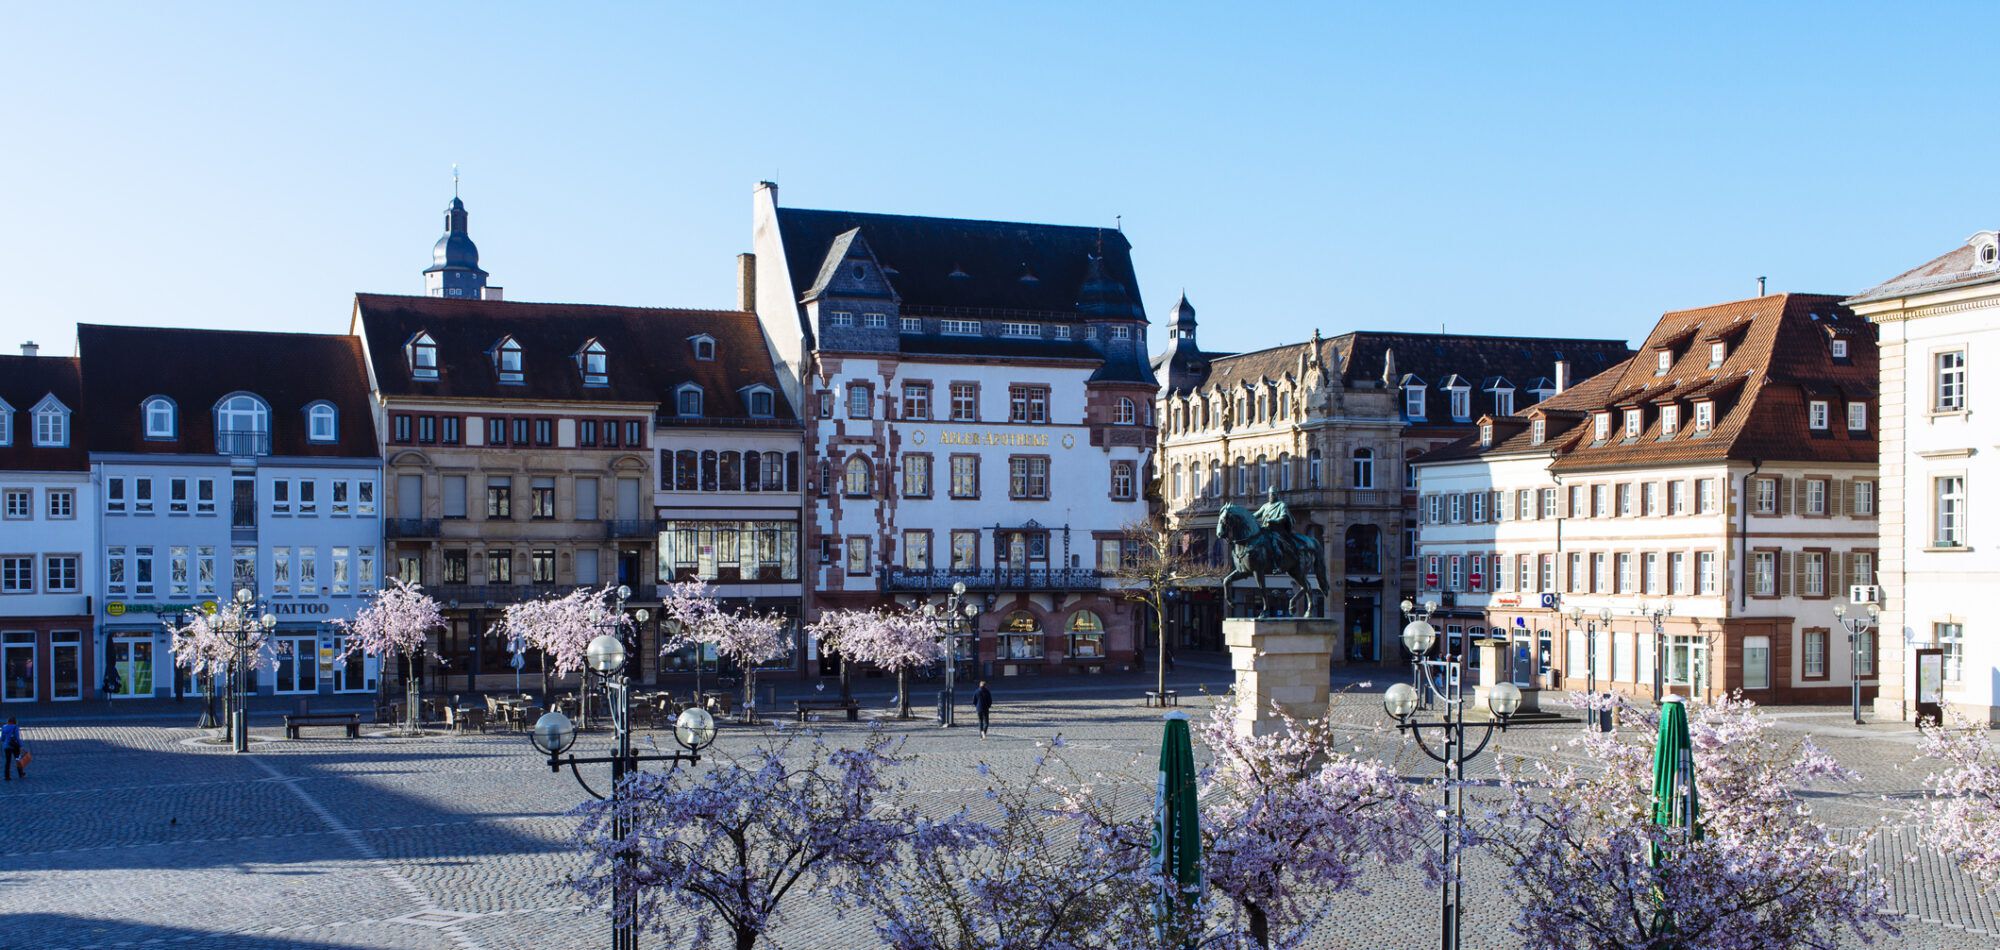 Landau in der Pfalz, Rathausplatz